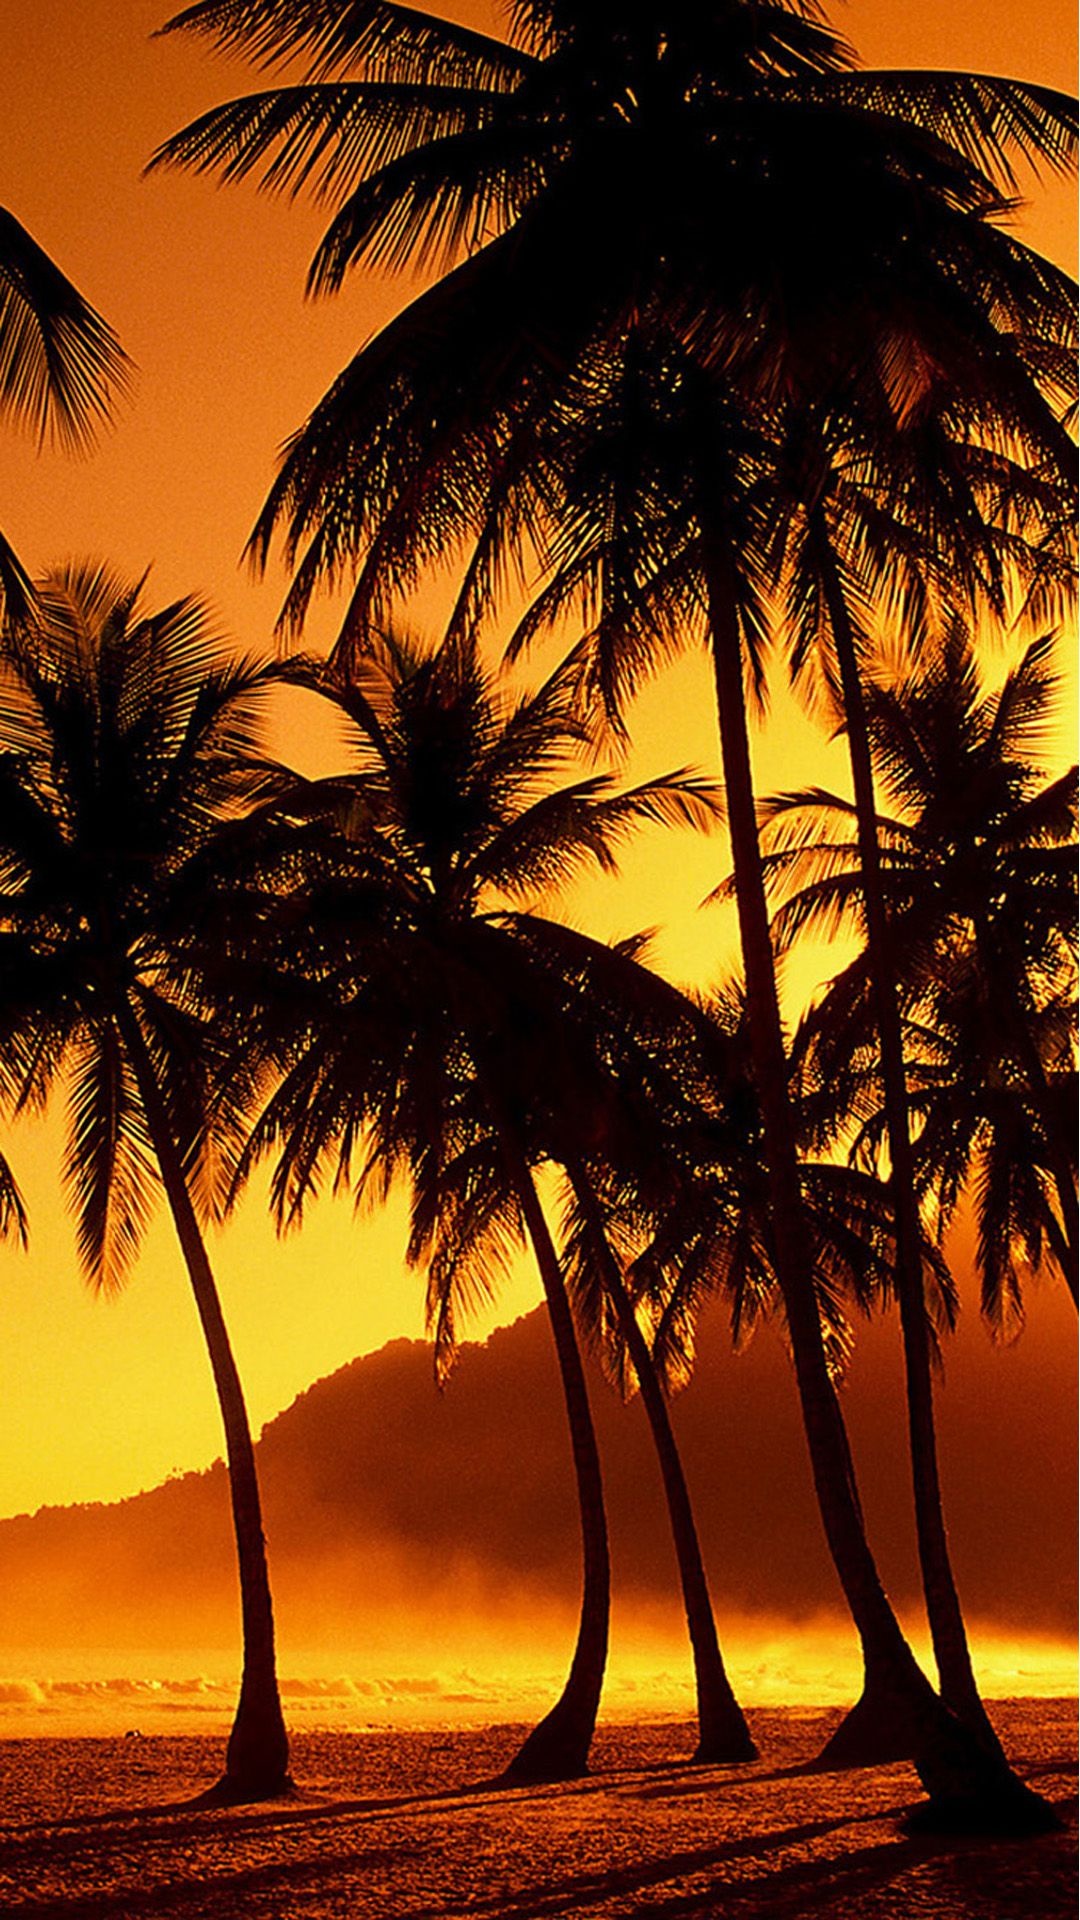 Sunset beach wallpaper, Coconut grove scenery, iPhone wallpaper, Hawaiian paradise, 1080x1920 Full HD Phone